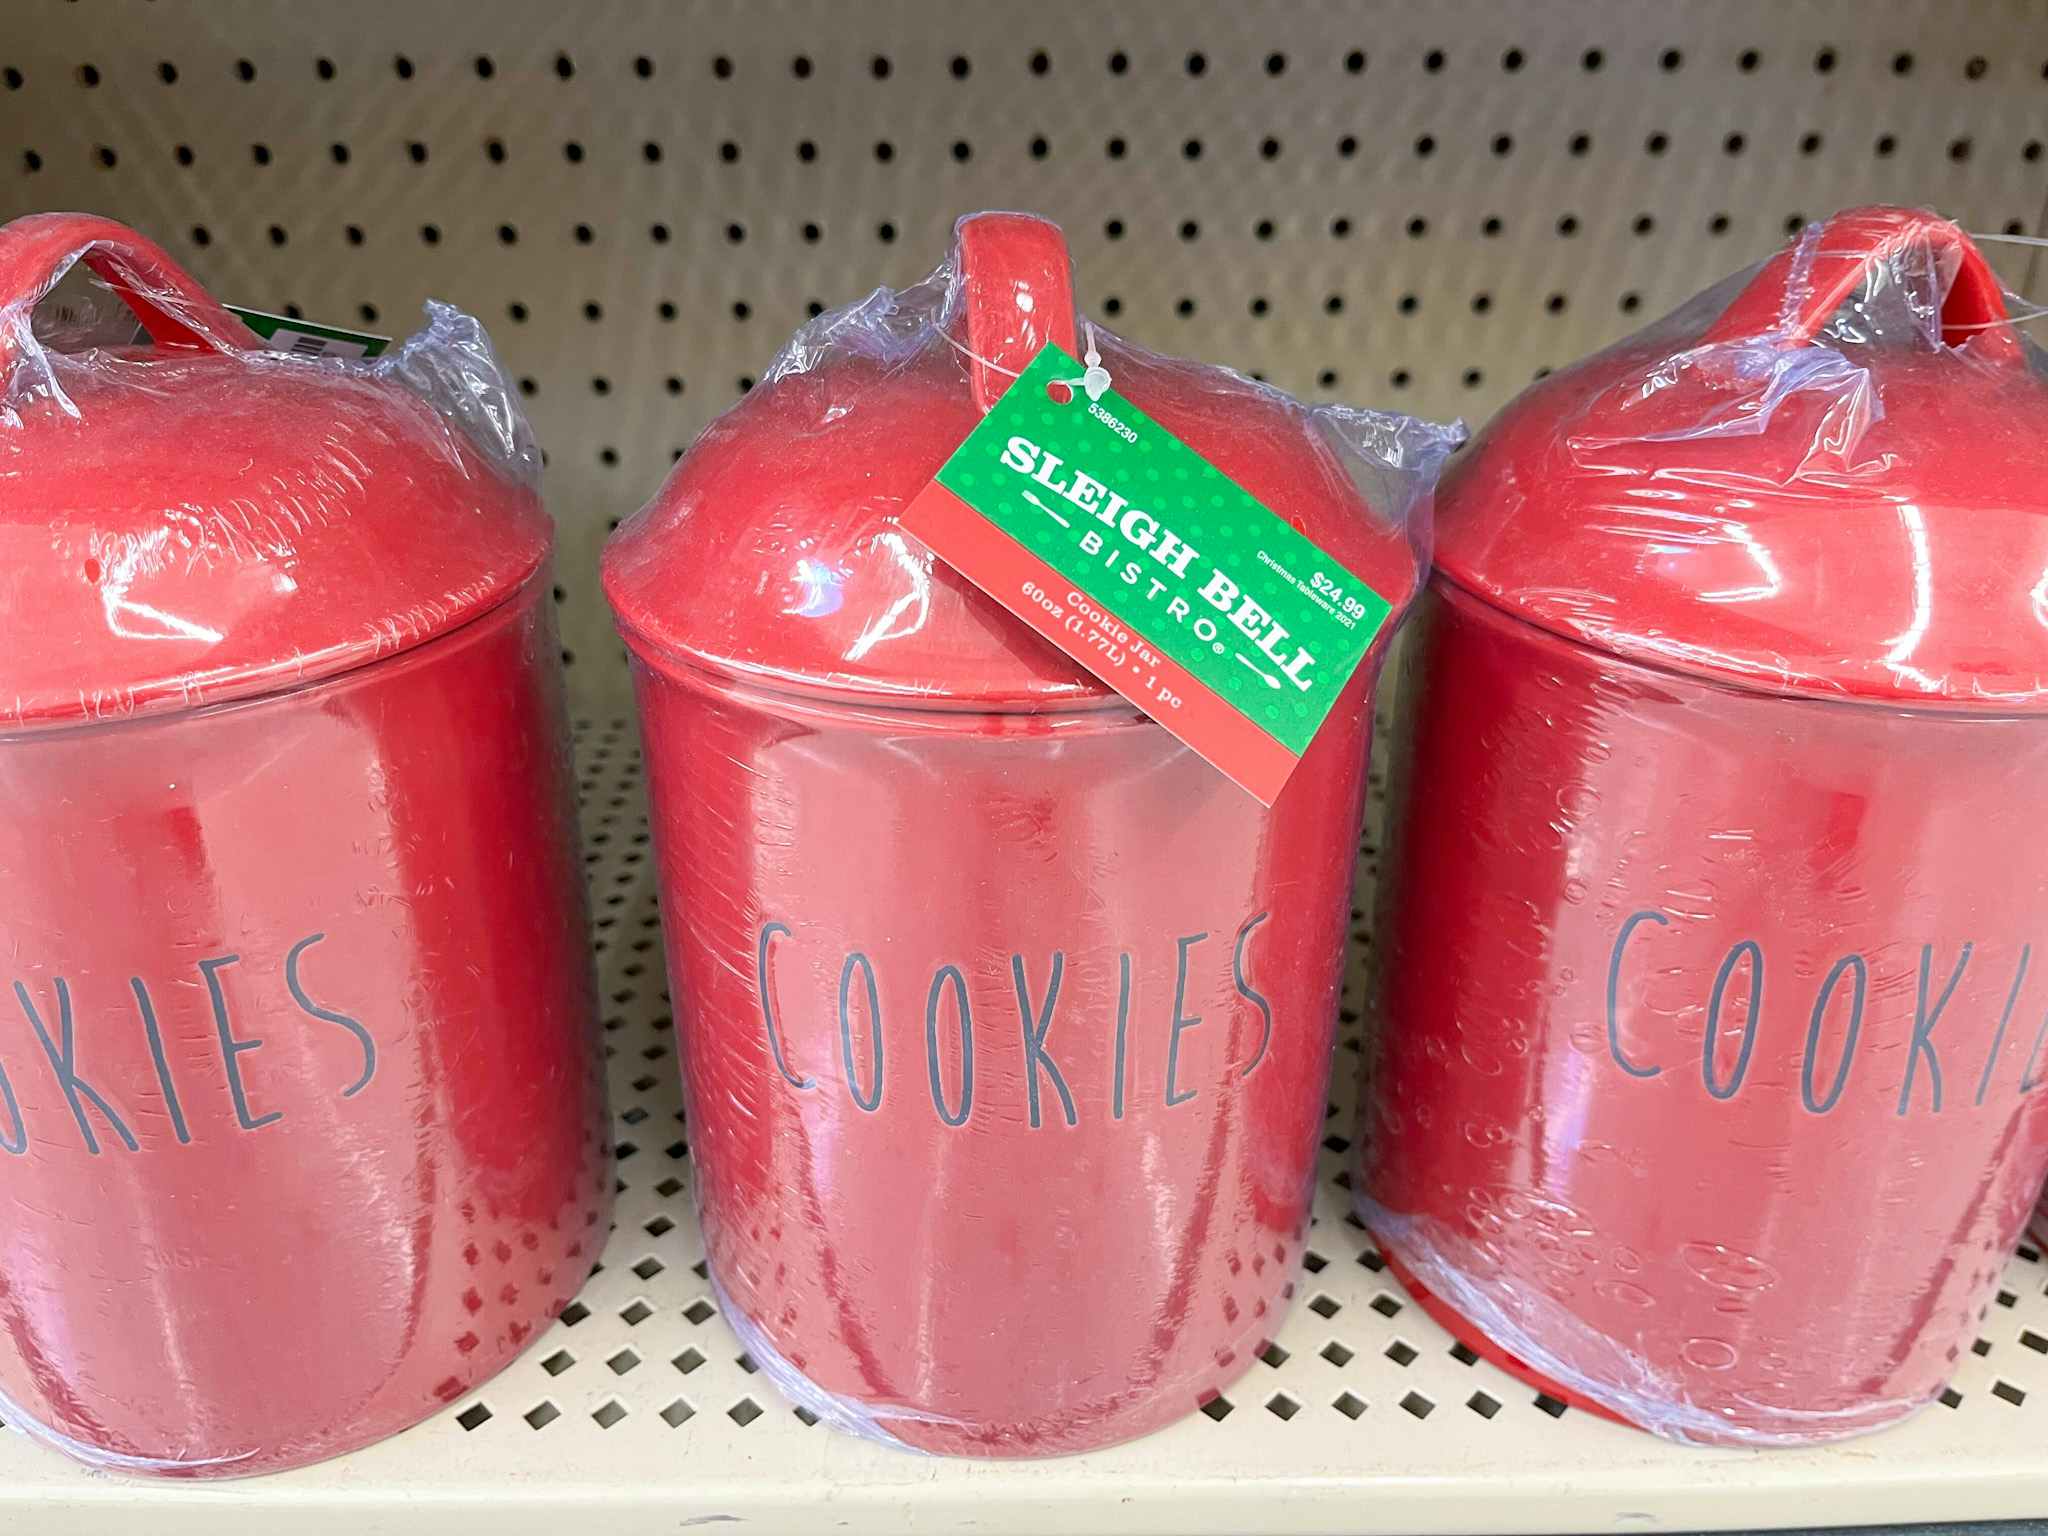 Cookie jars